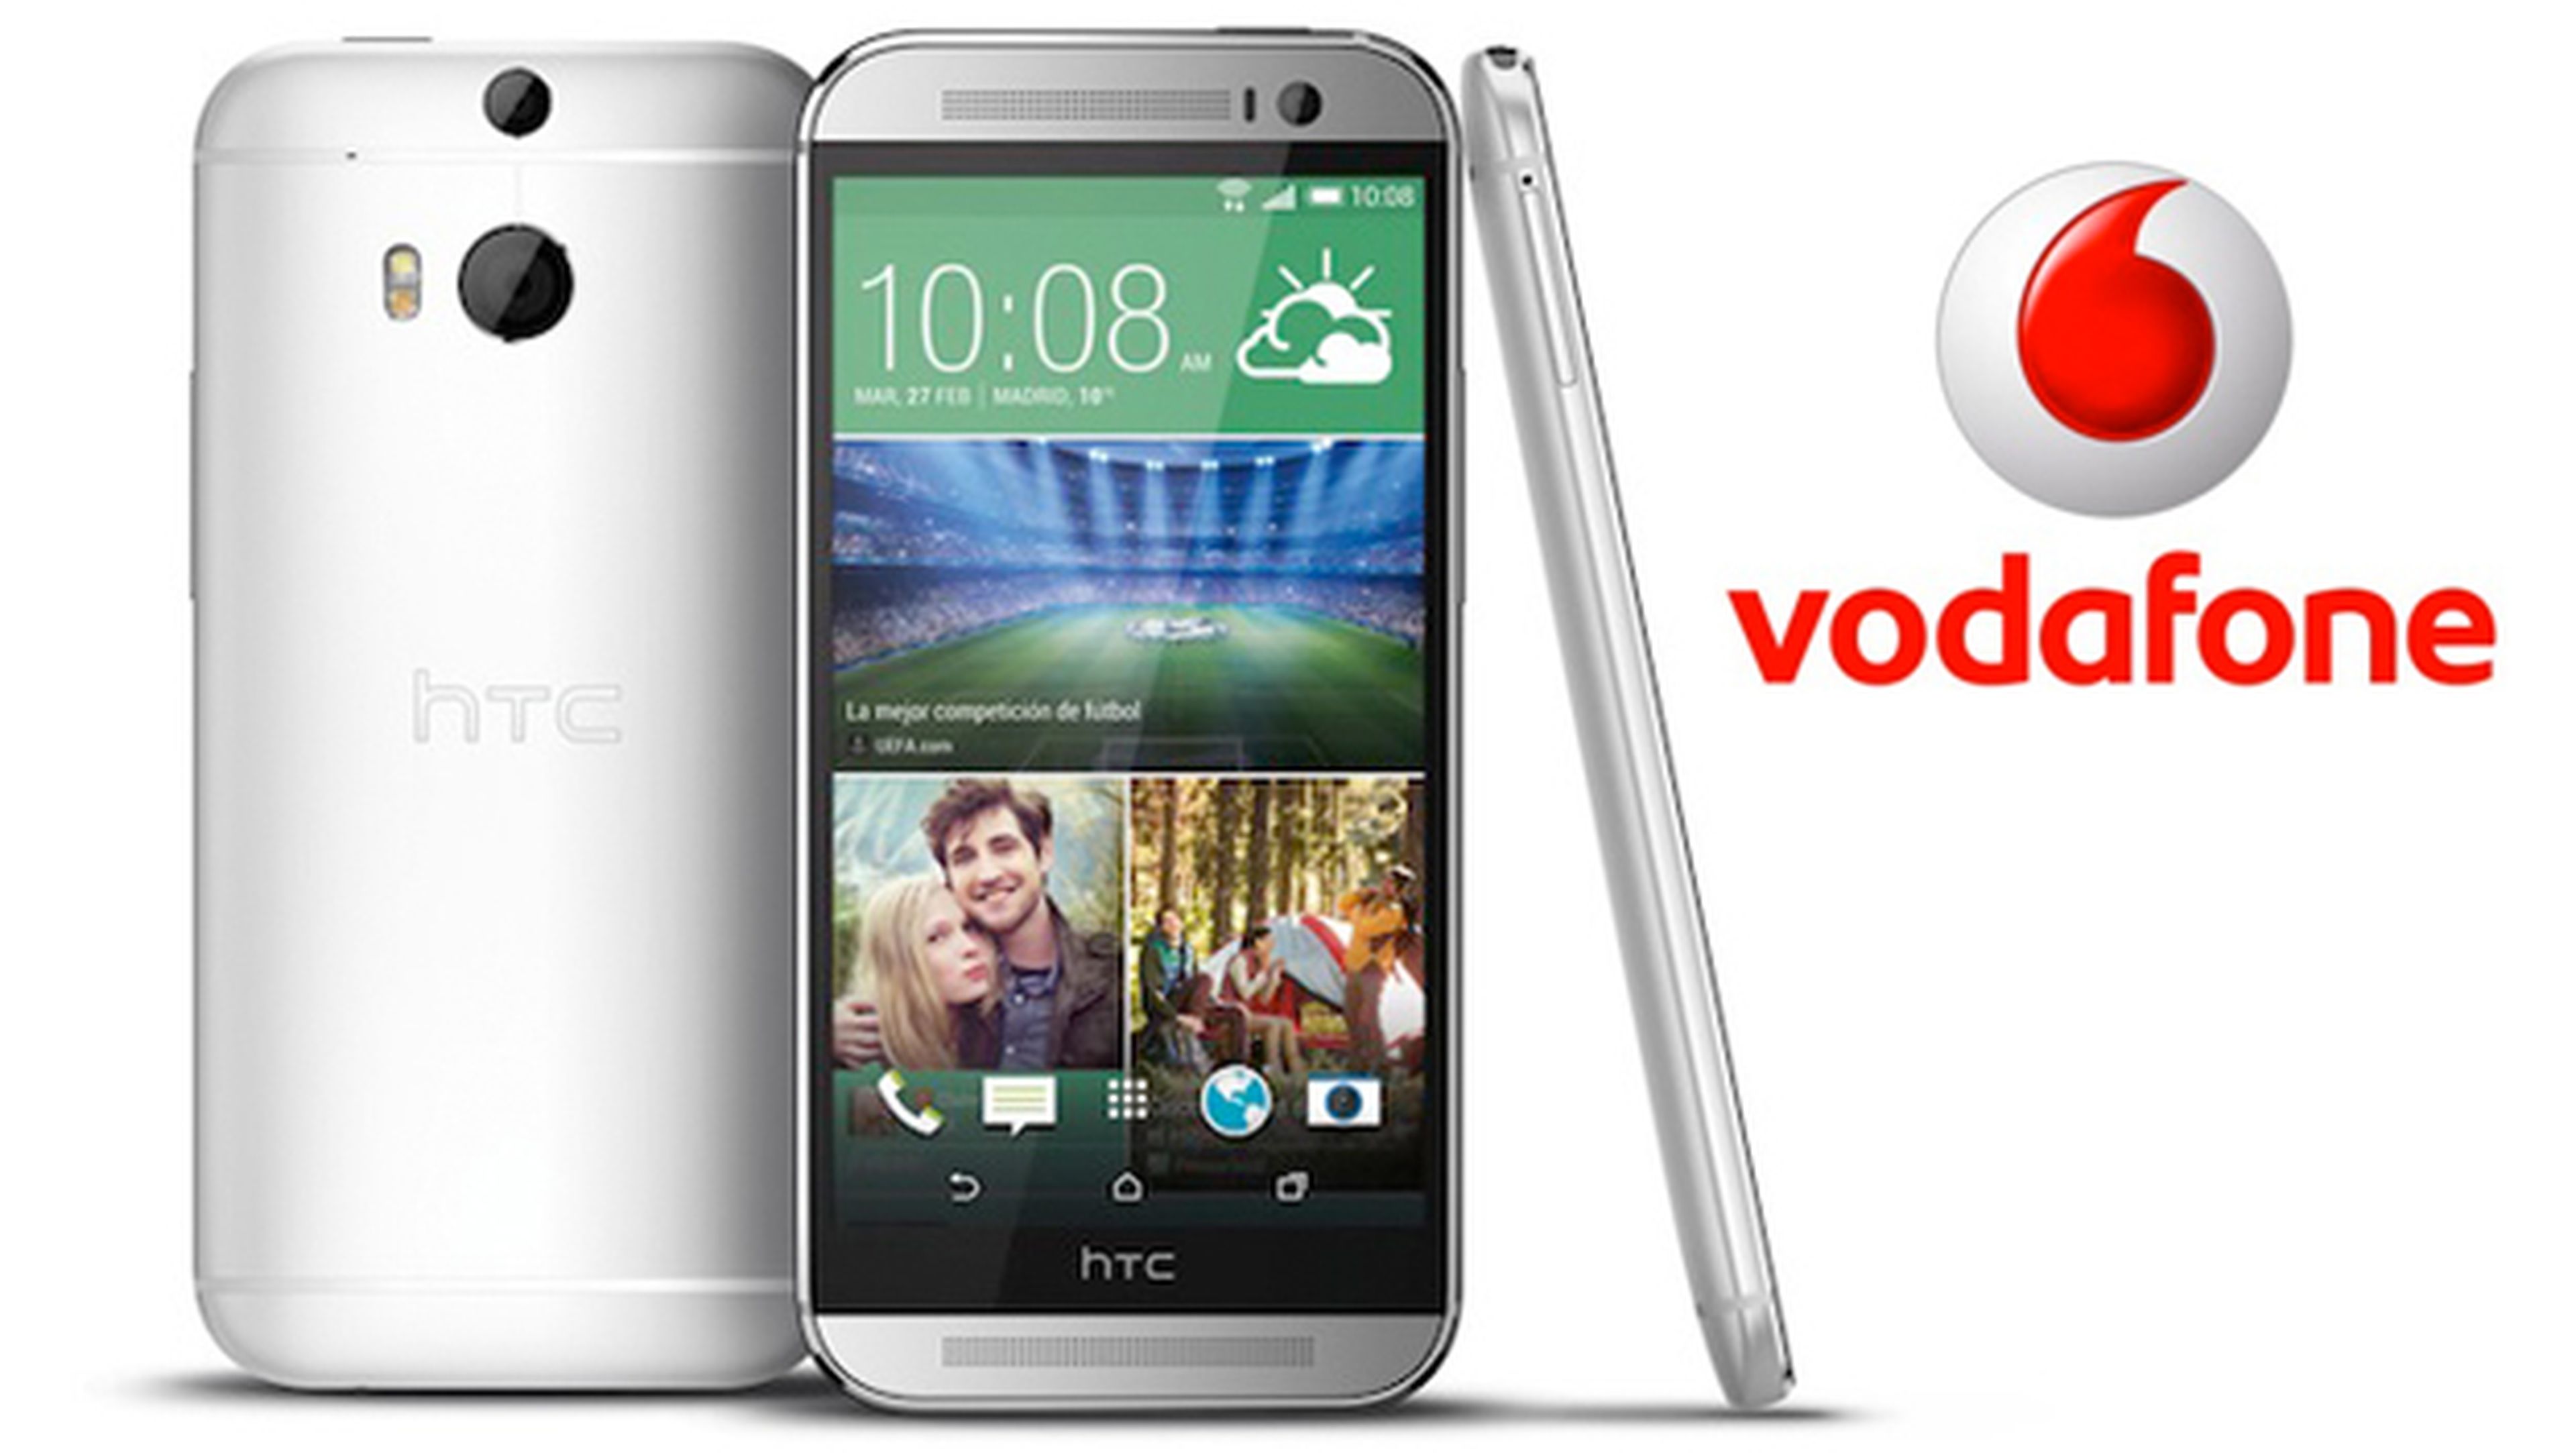 Vodafone lanzará el nuevo HTC ONE (M8) plata en exclusiva